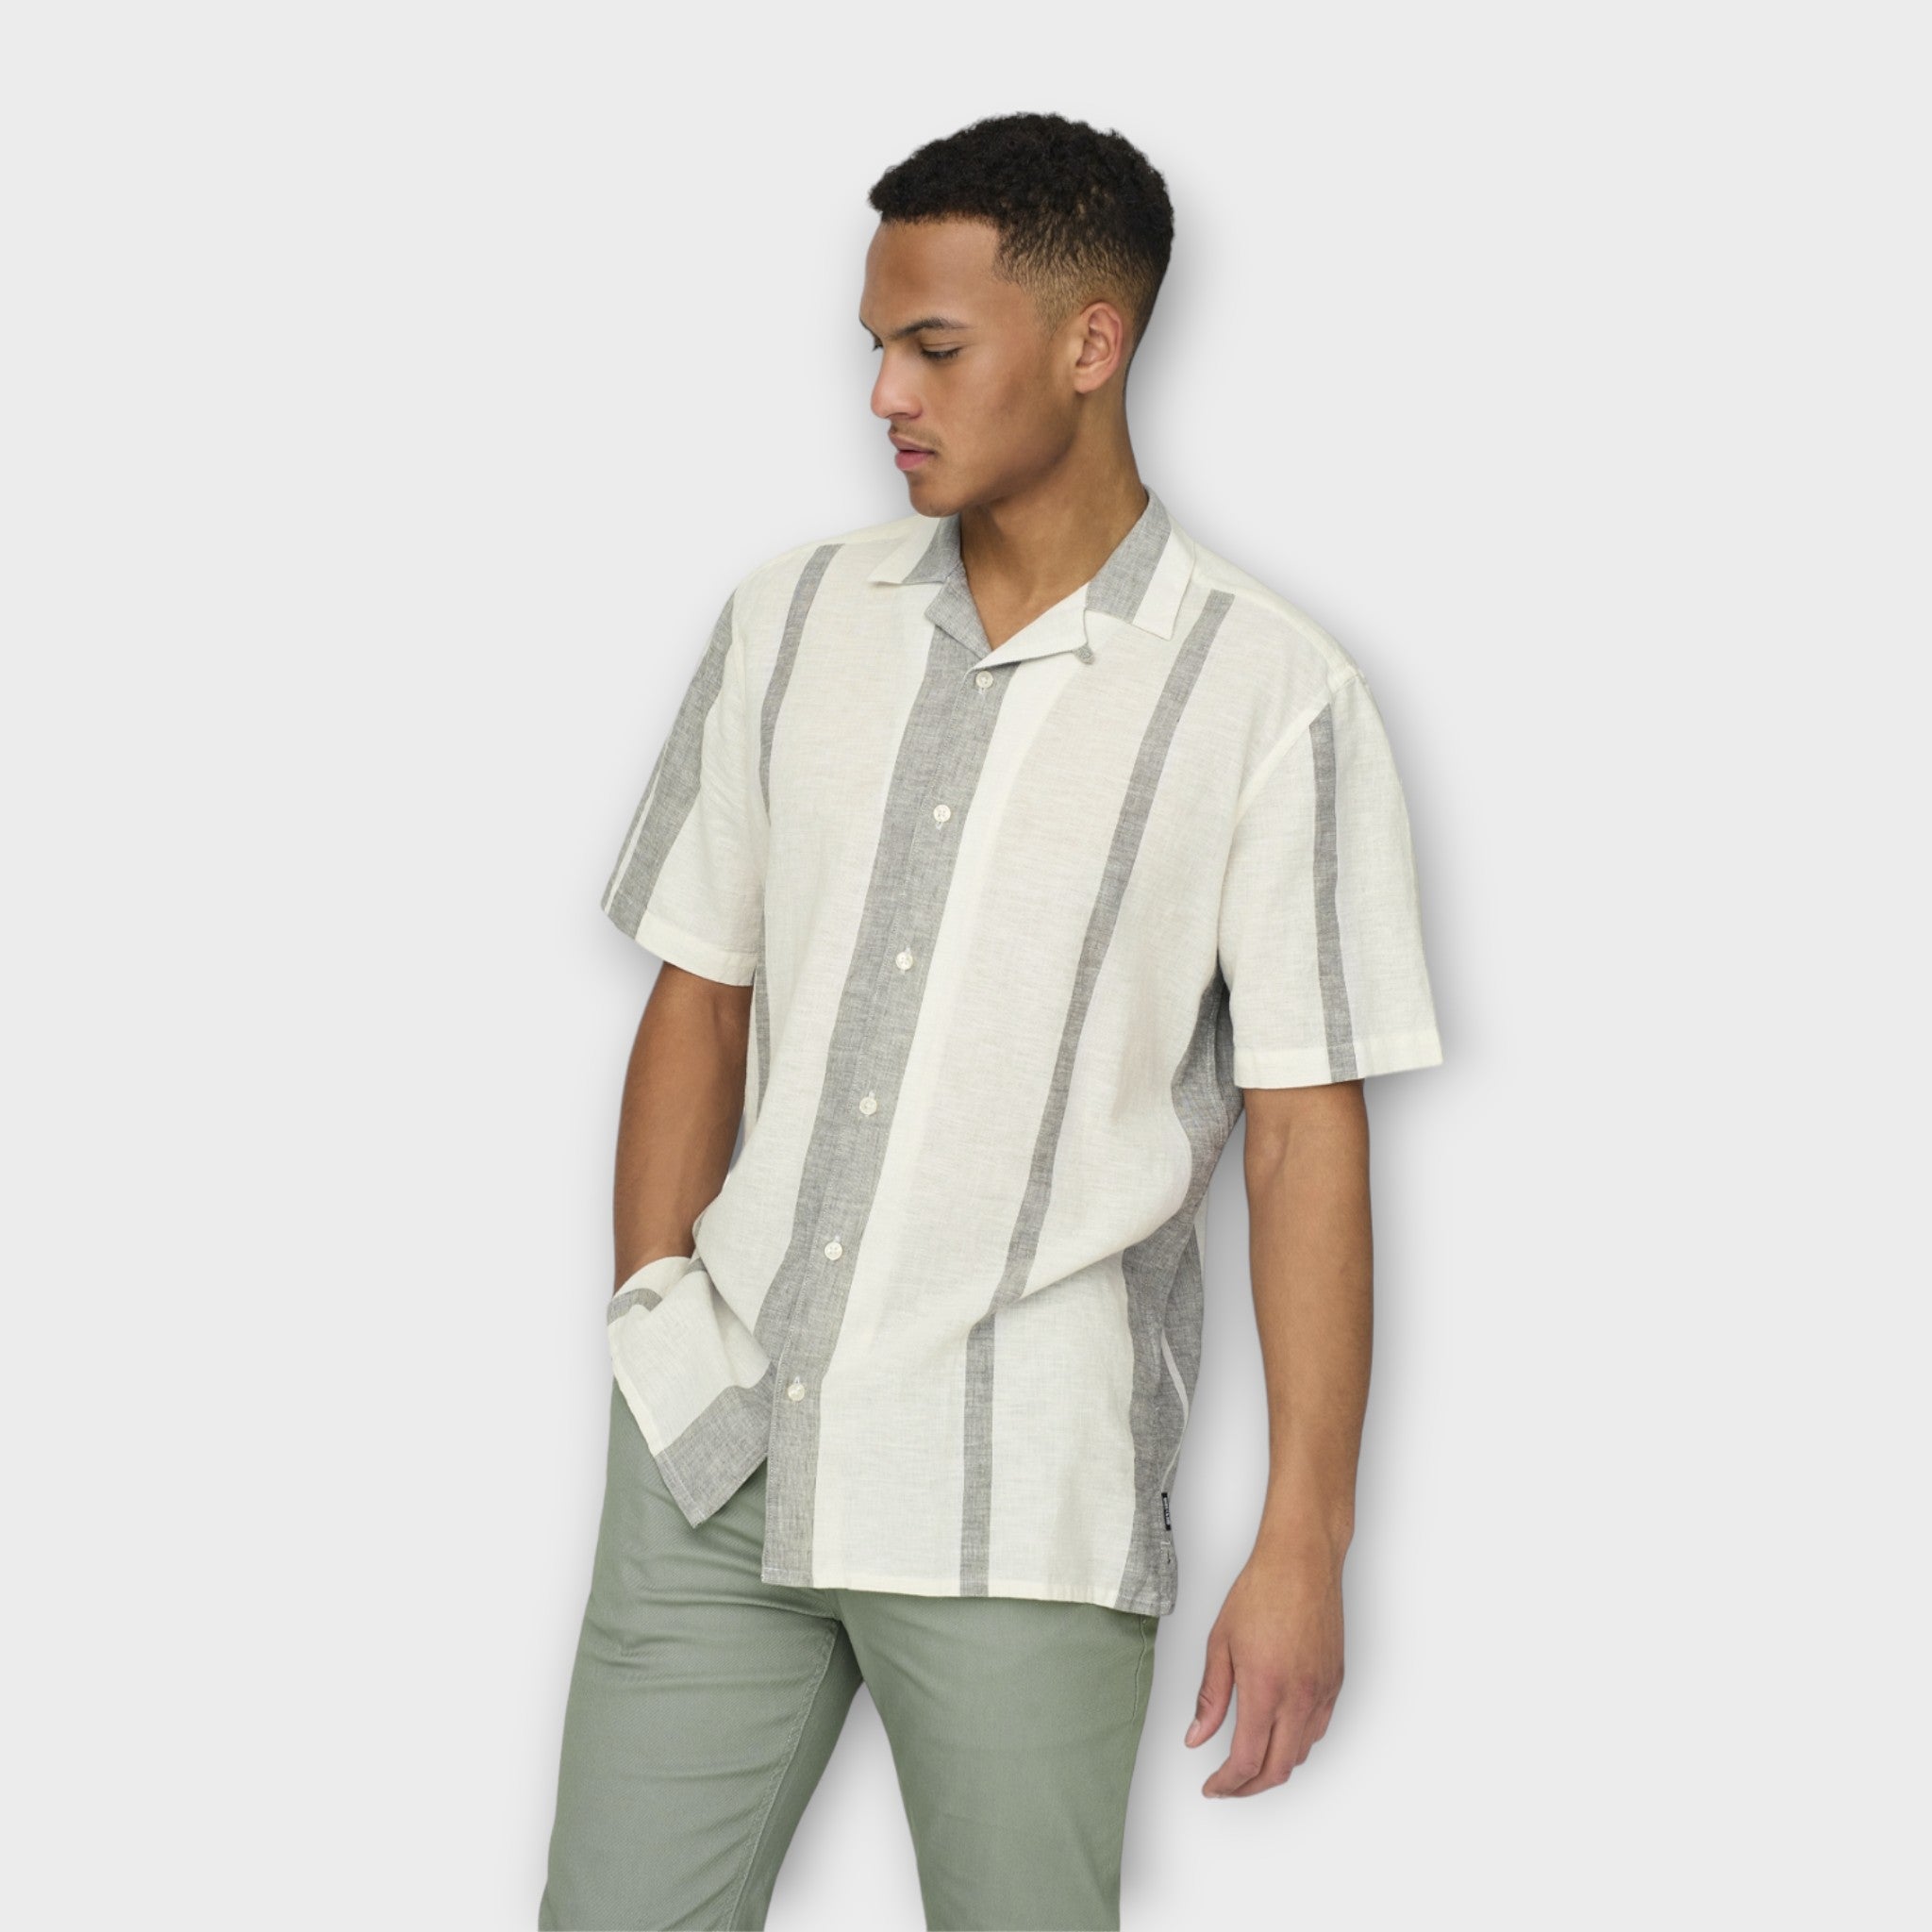 Only And Sons Caiden Stripe Linen Resort Shirt Dusty Olive. Lækker kortærmet råhvid stribet hørskjorte med Cuba Krave. Her set model fra siden.